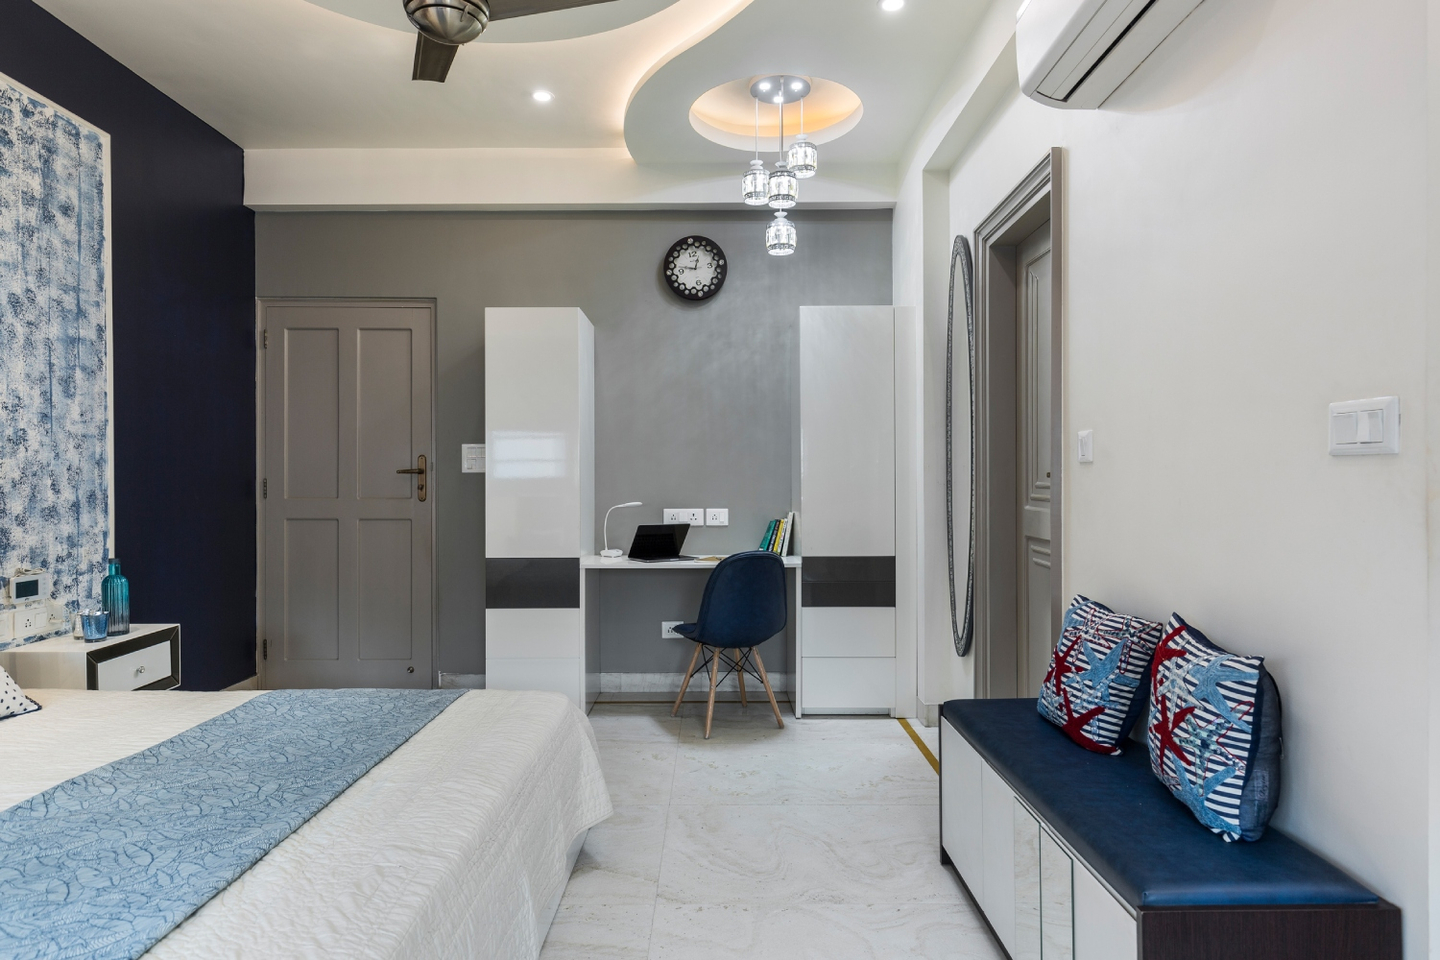 Multilayered Bedroom Ceiling Design - Livspace